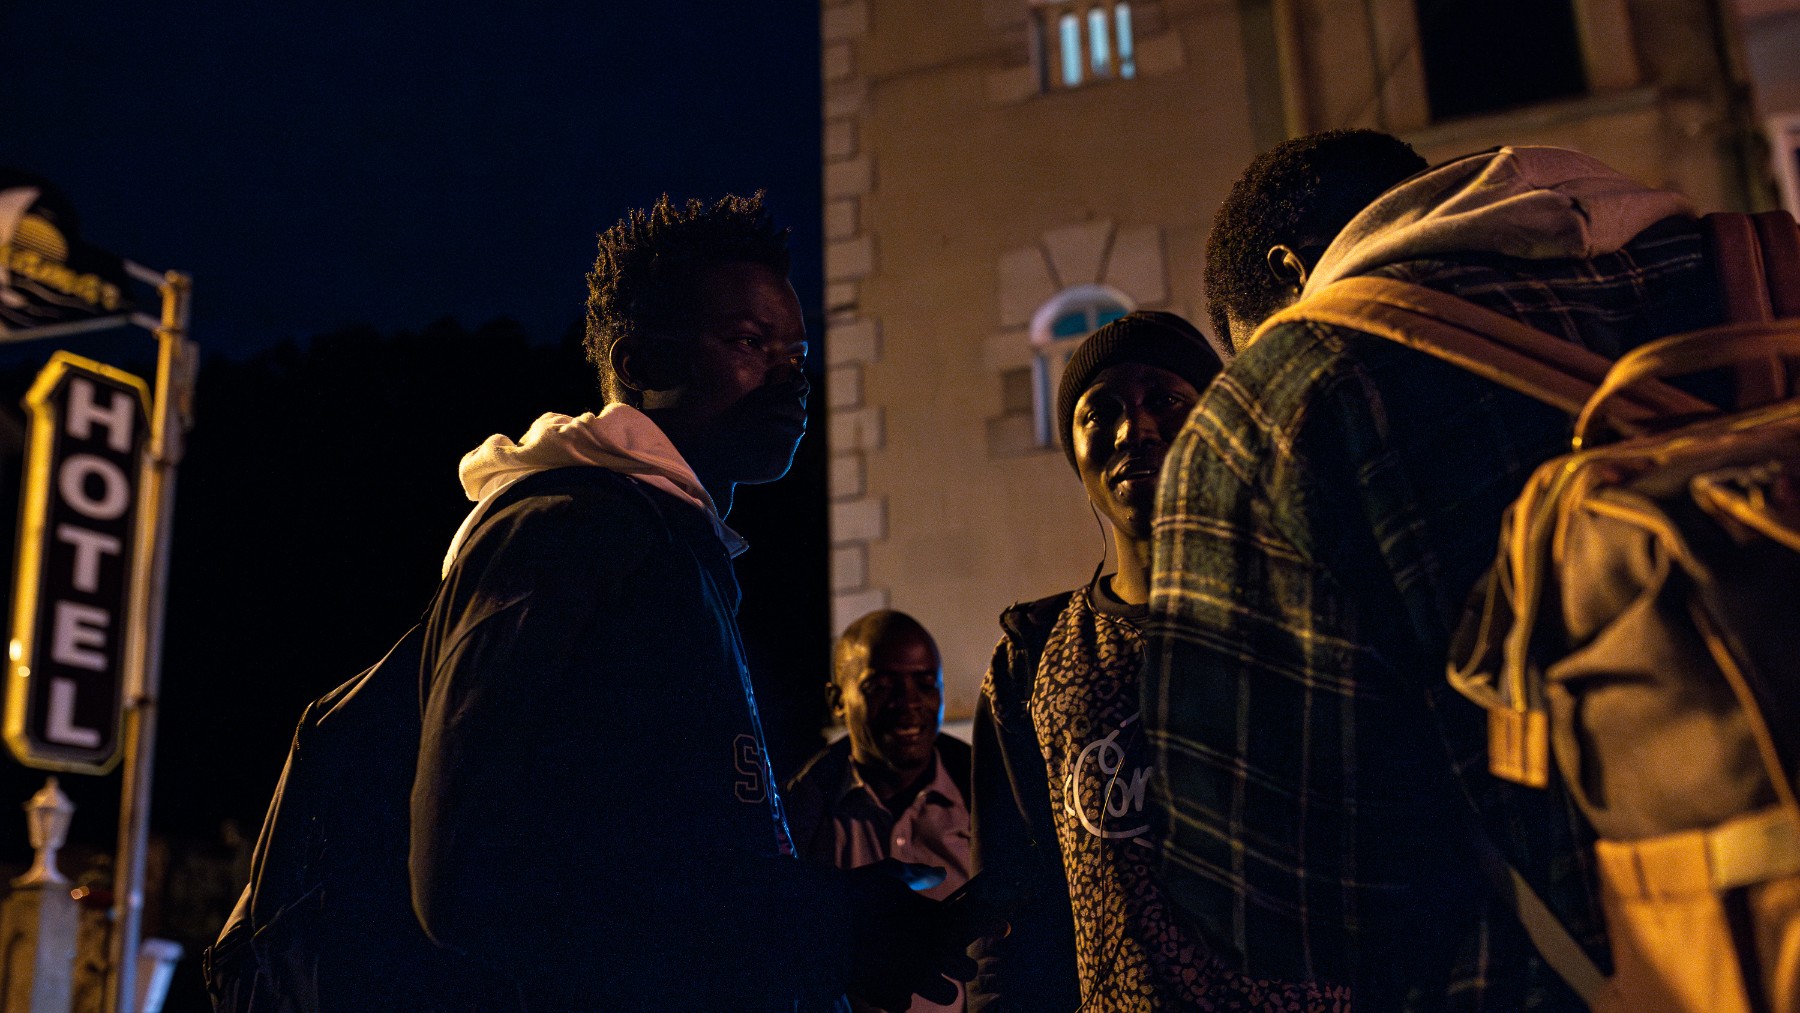 Inmigrantes ilegales en un hotel de Sangenjo antes de ser llevado a Alcalá de Henares (Madrid). (Foto: EP)